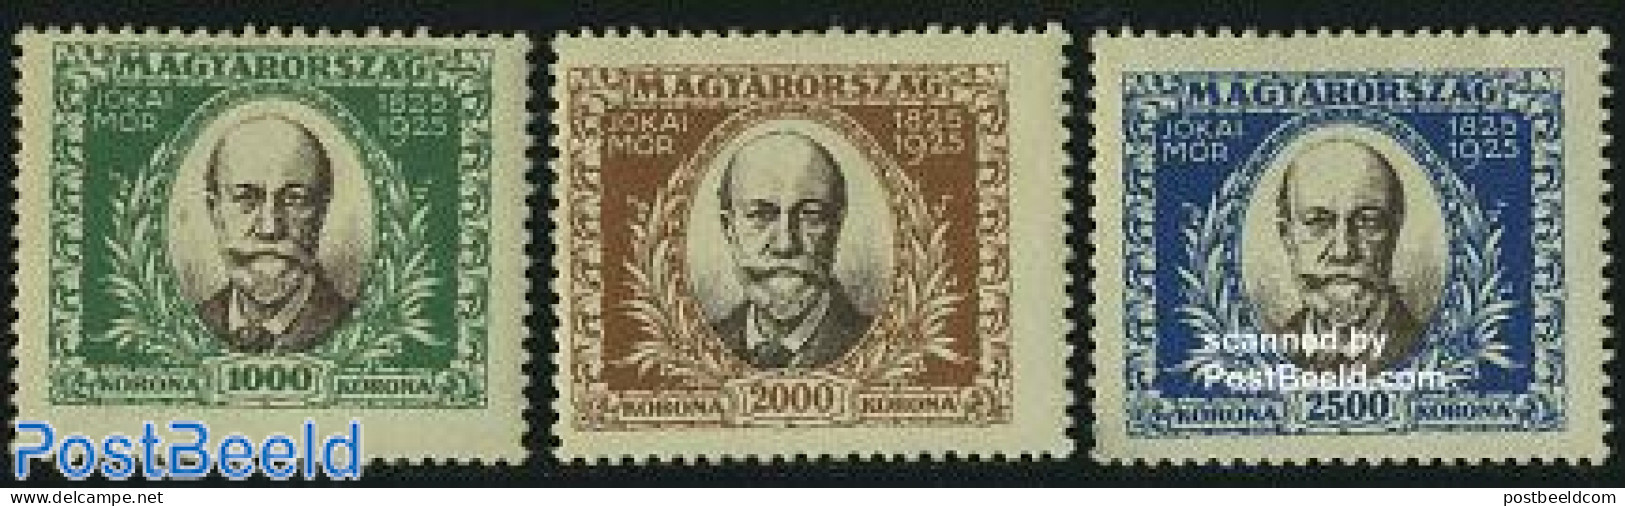 Hungary 1925 M. Jokais Birth Centenary 3v, Unused (hinged), Art - Authors - Nuevos